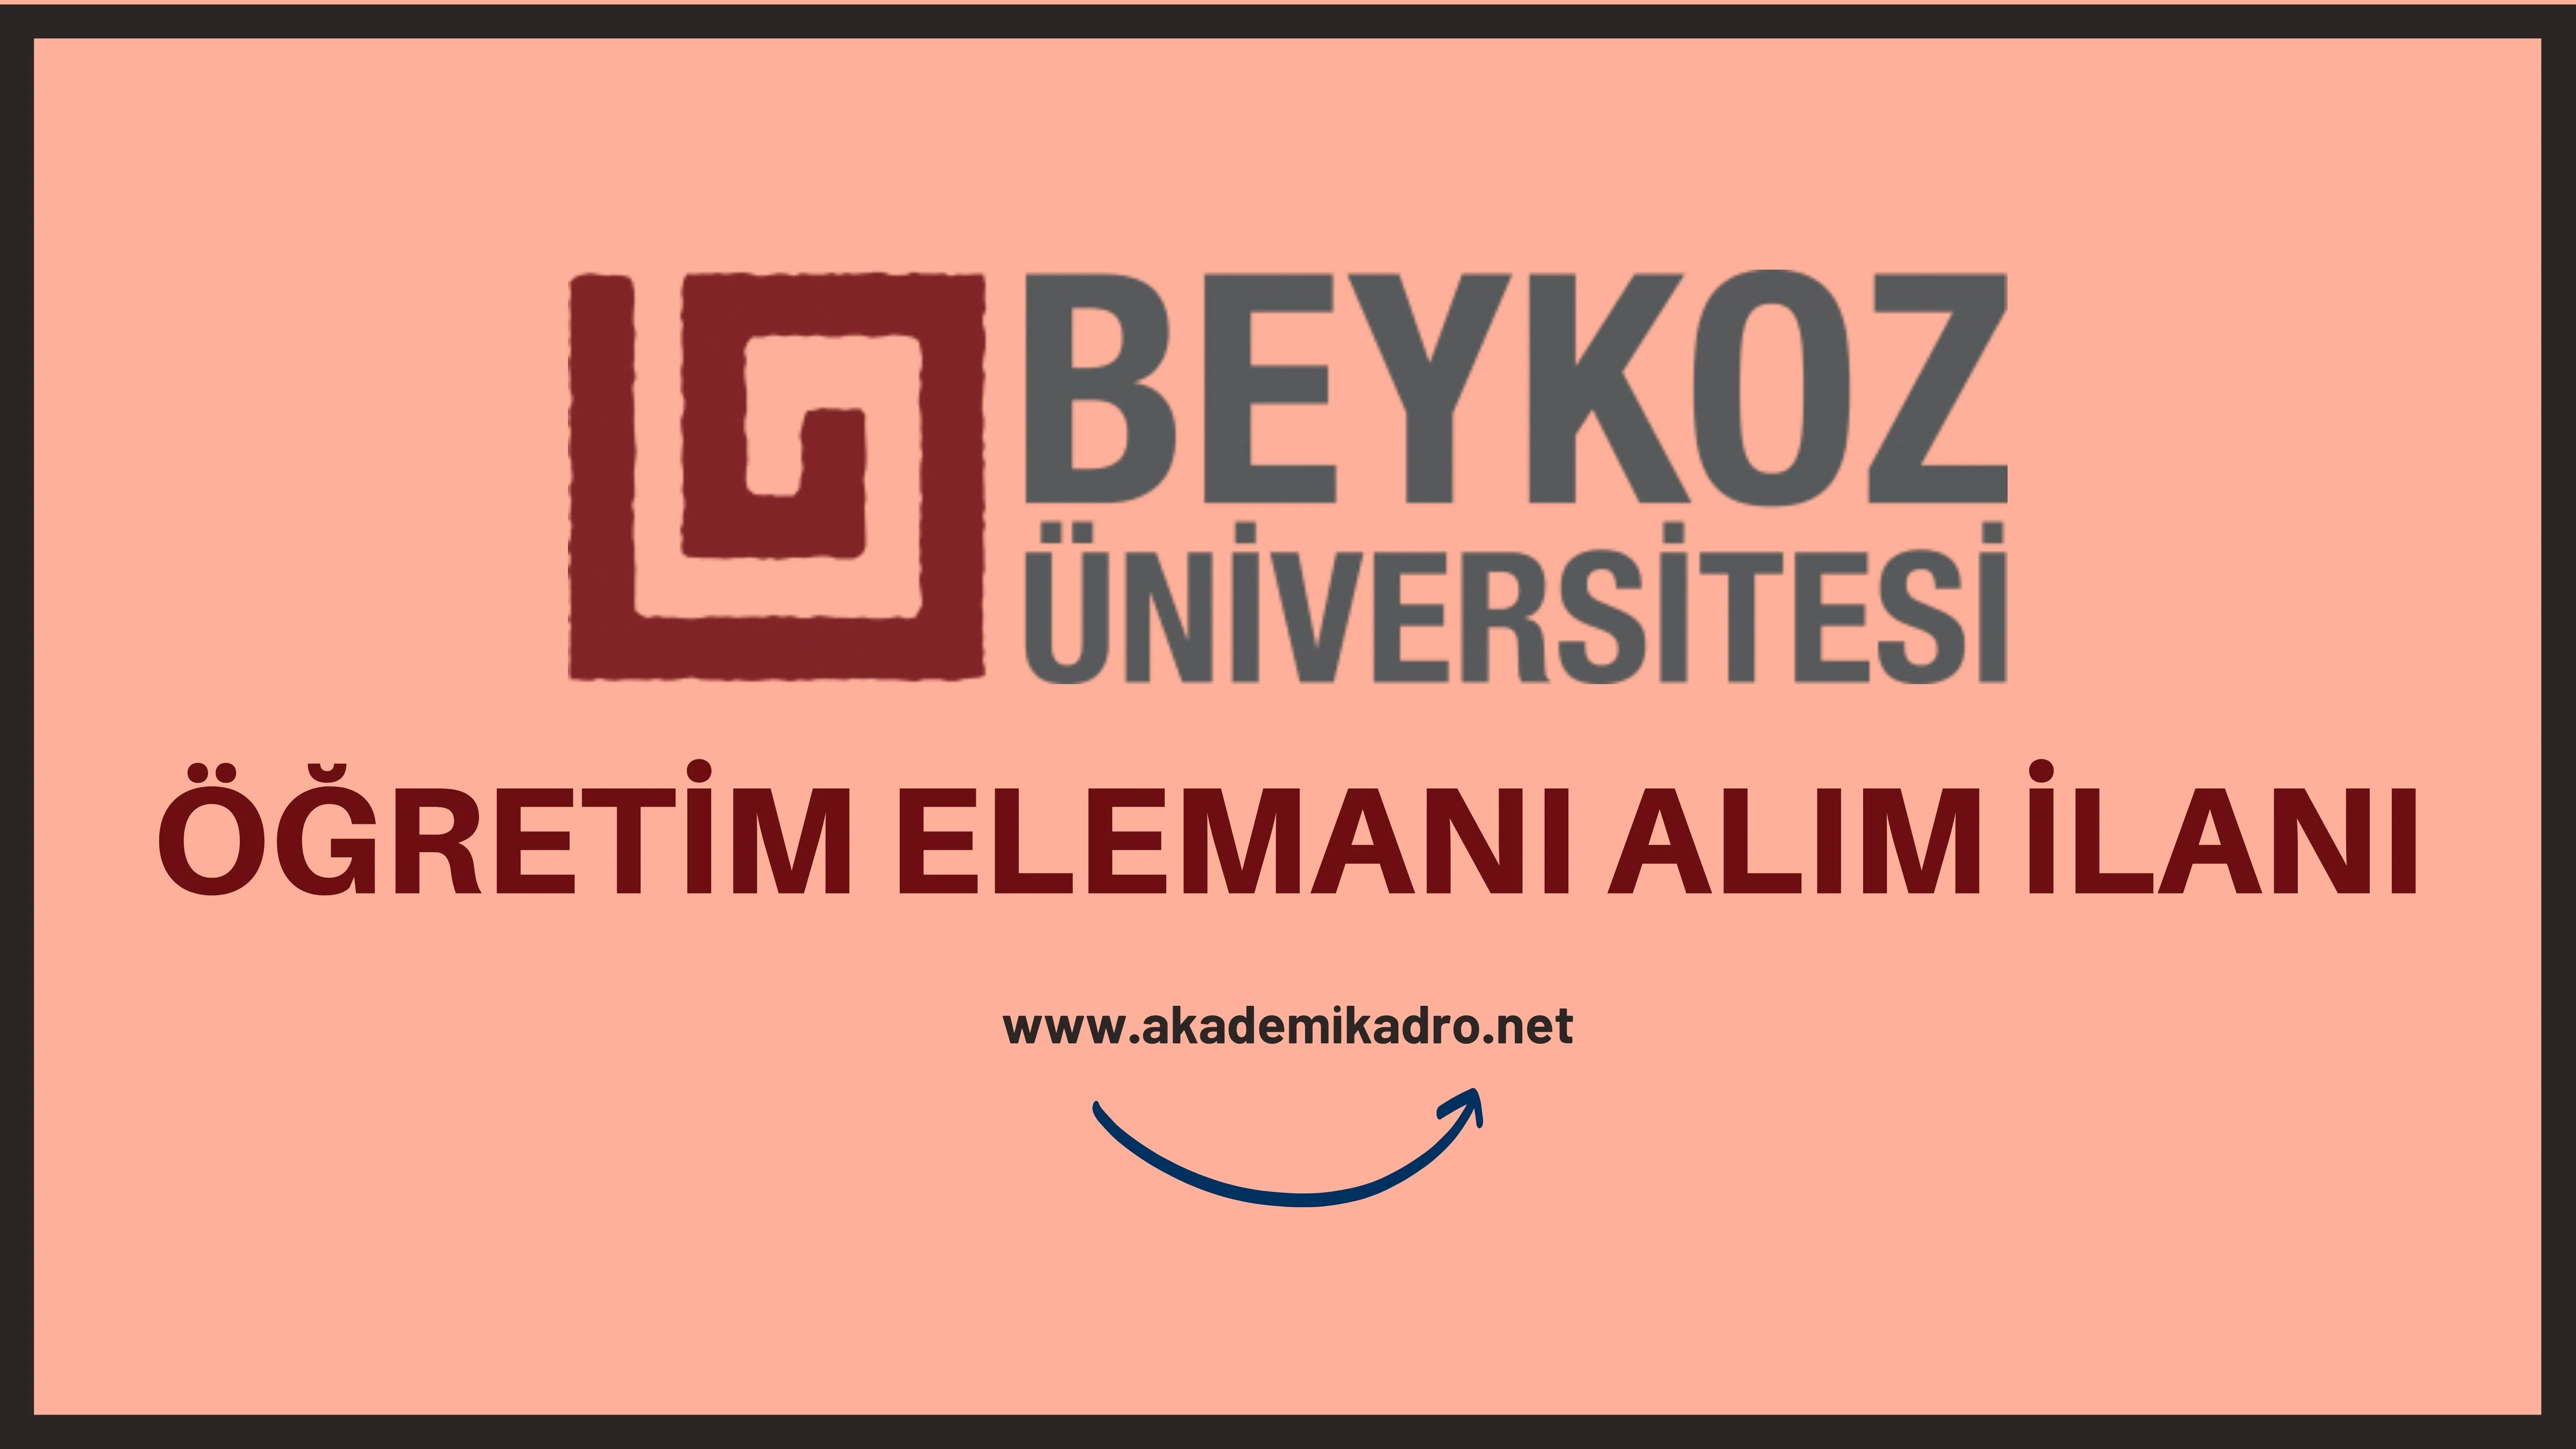 Beykoz Üniversitesi 12 Öğretim üyesi, 3 Öğretim görevlisi ve Araştırma görevlisi alacaktır. Son başvuru tarihi 20 Eylül 2022